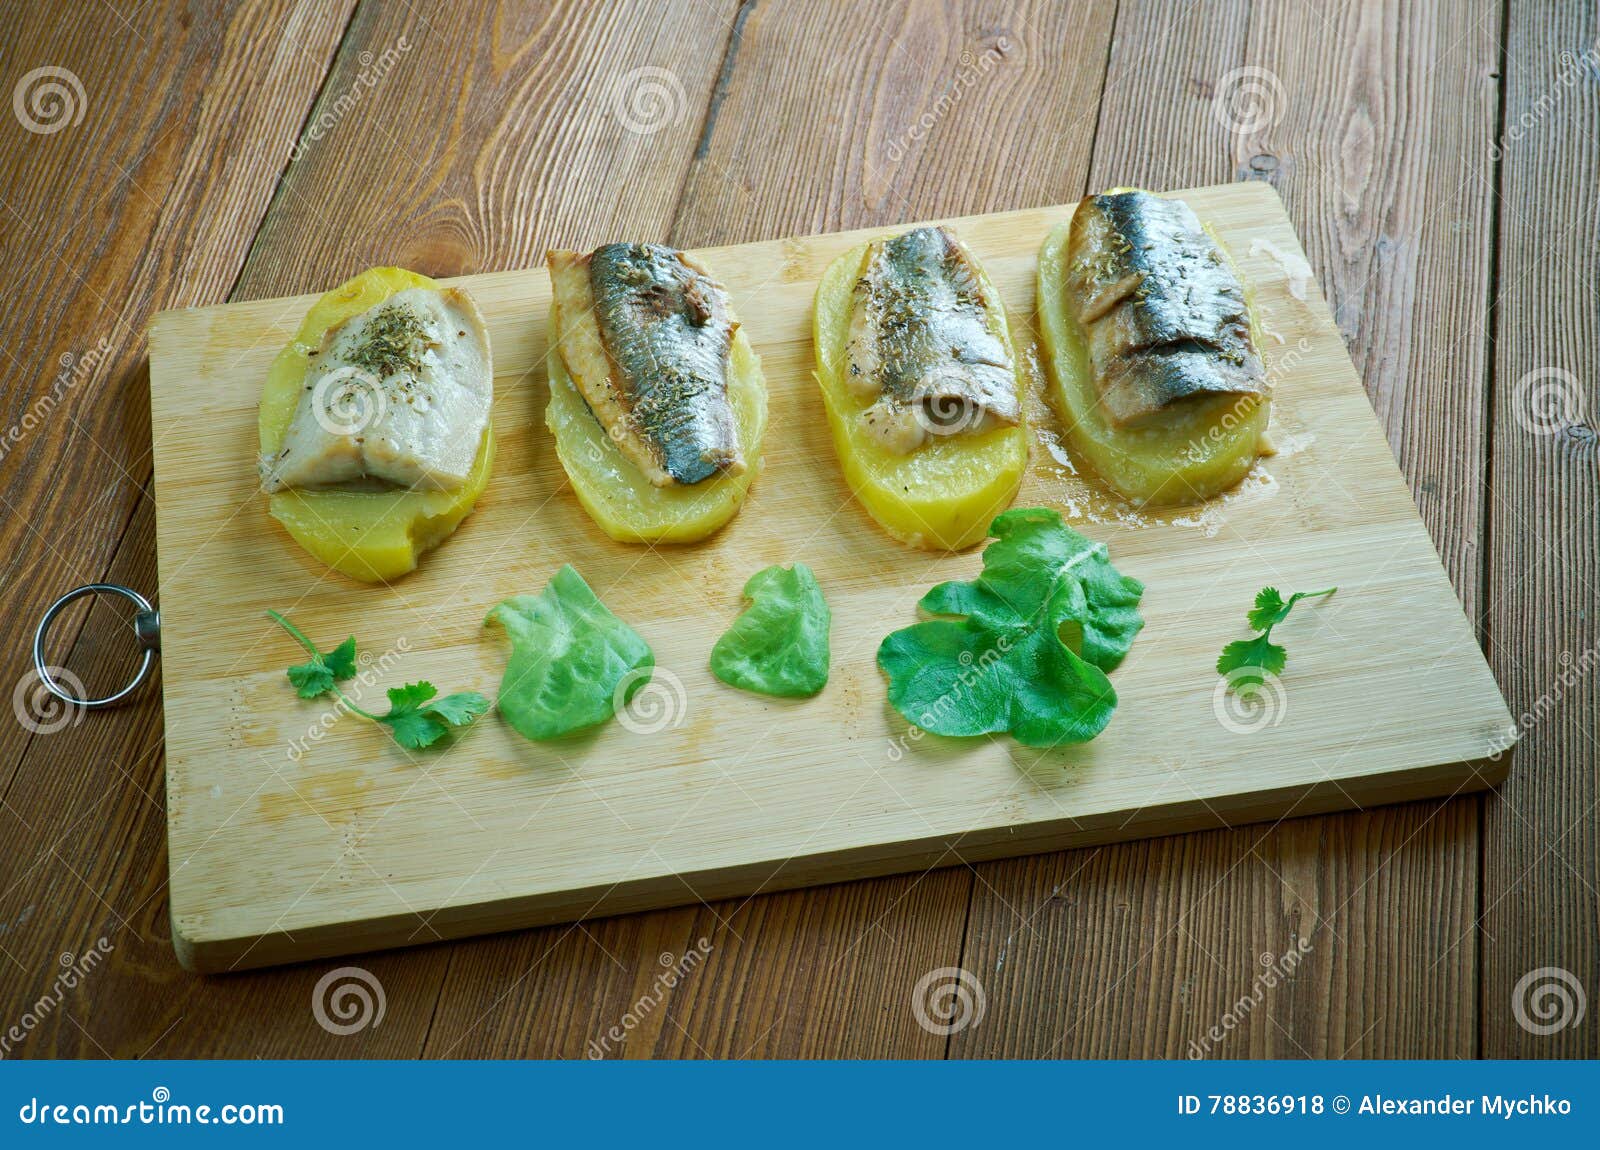 eel with baked potatoes